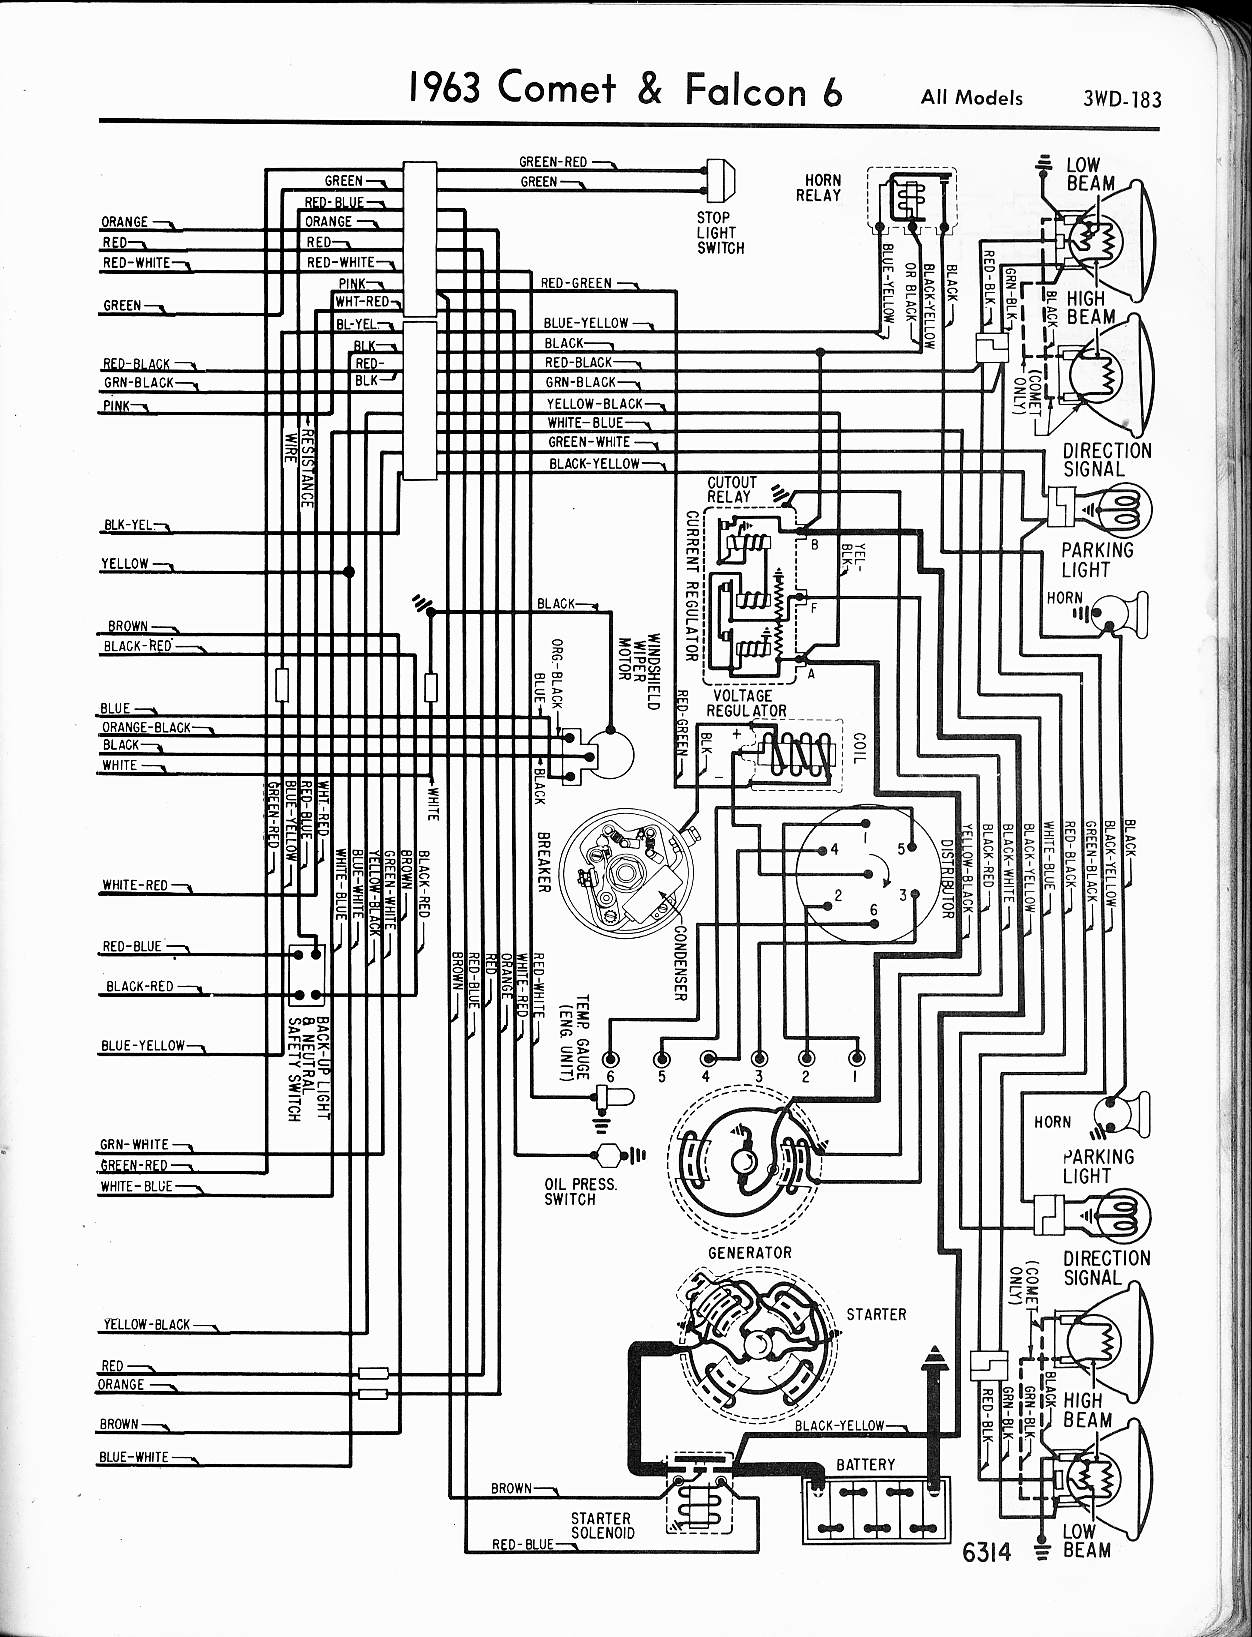 1963 Ford ranchero wiring diagrams #1